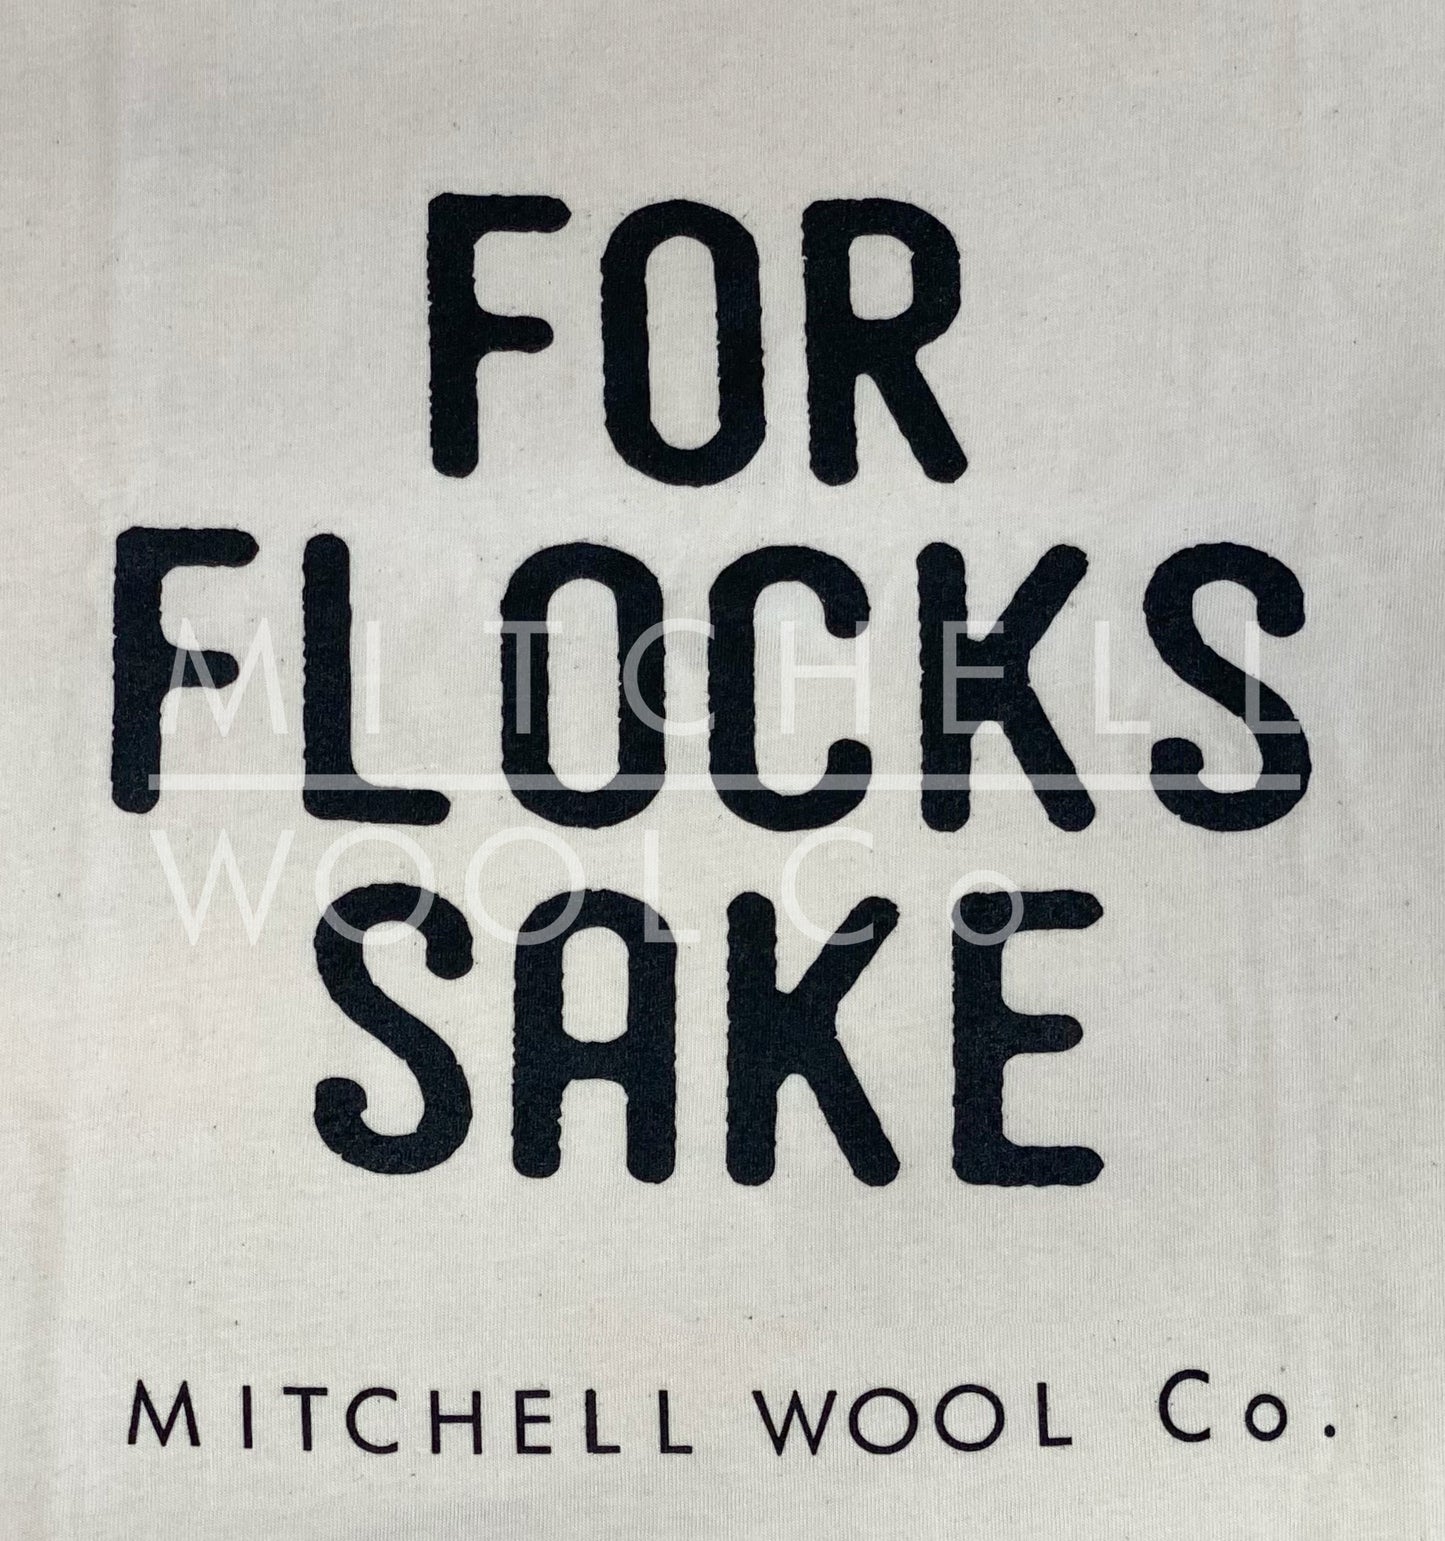 FOR FLOCKS SAKE - Organic Cotton Sweatshirt